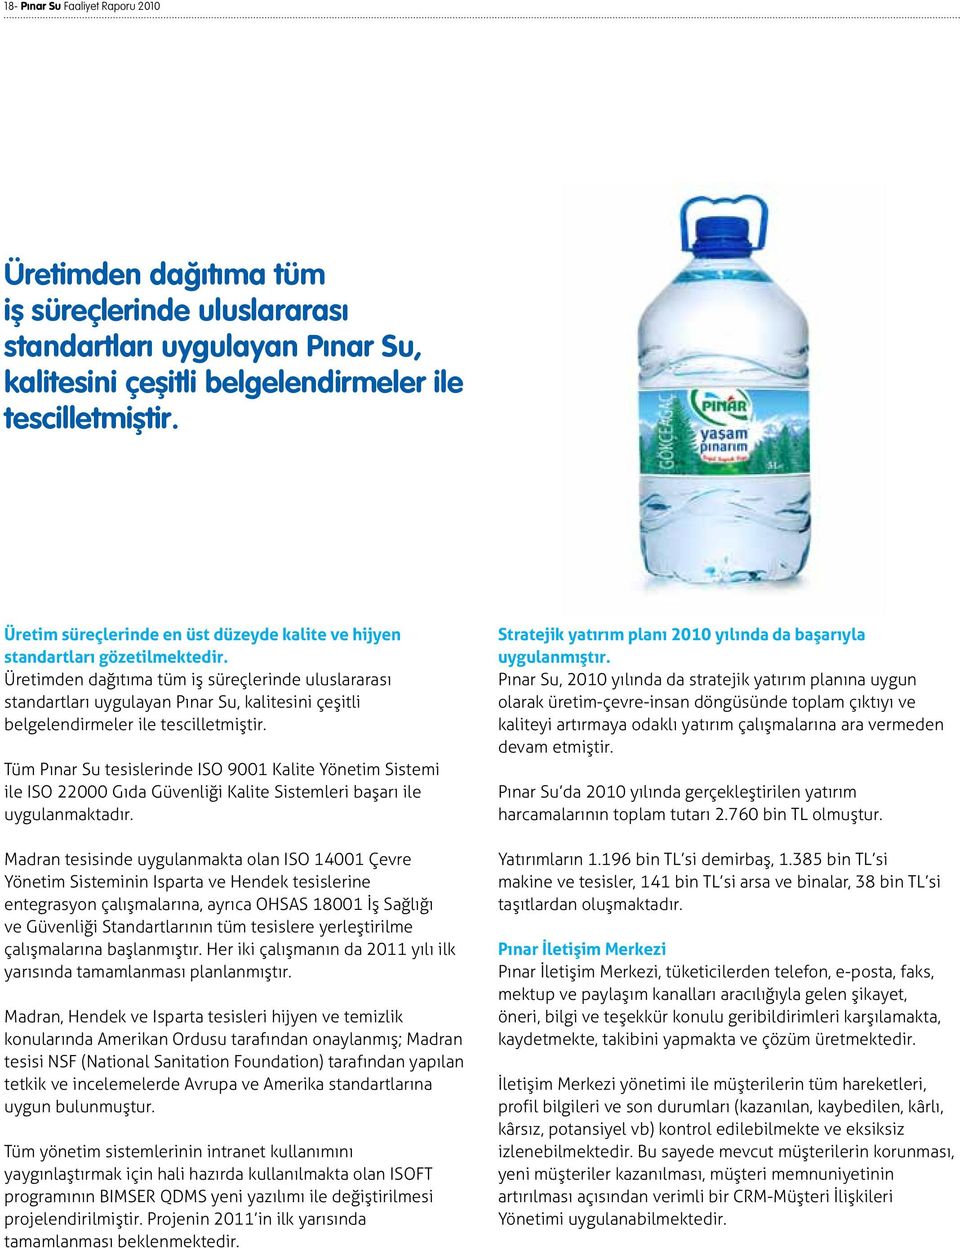 Üretimden dağıtıma tüm iş süreçlerinde uluslararası standartları uygulayan Pınar Su, kalitesini çeşitli belgelendirmeler ile tescilletmiştir.